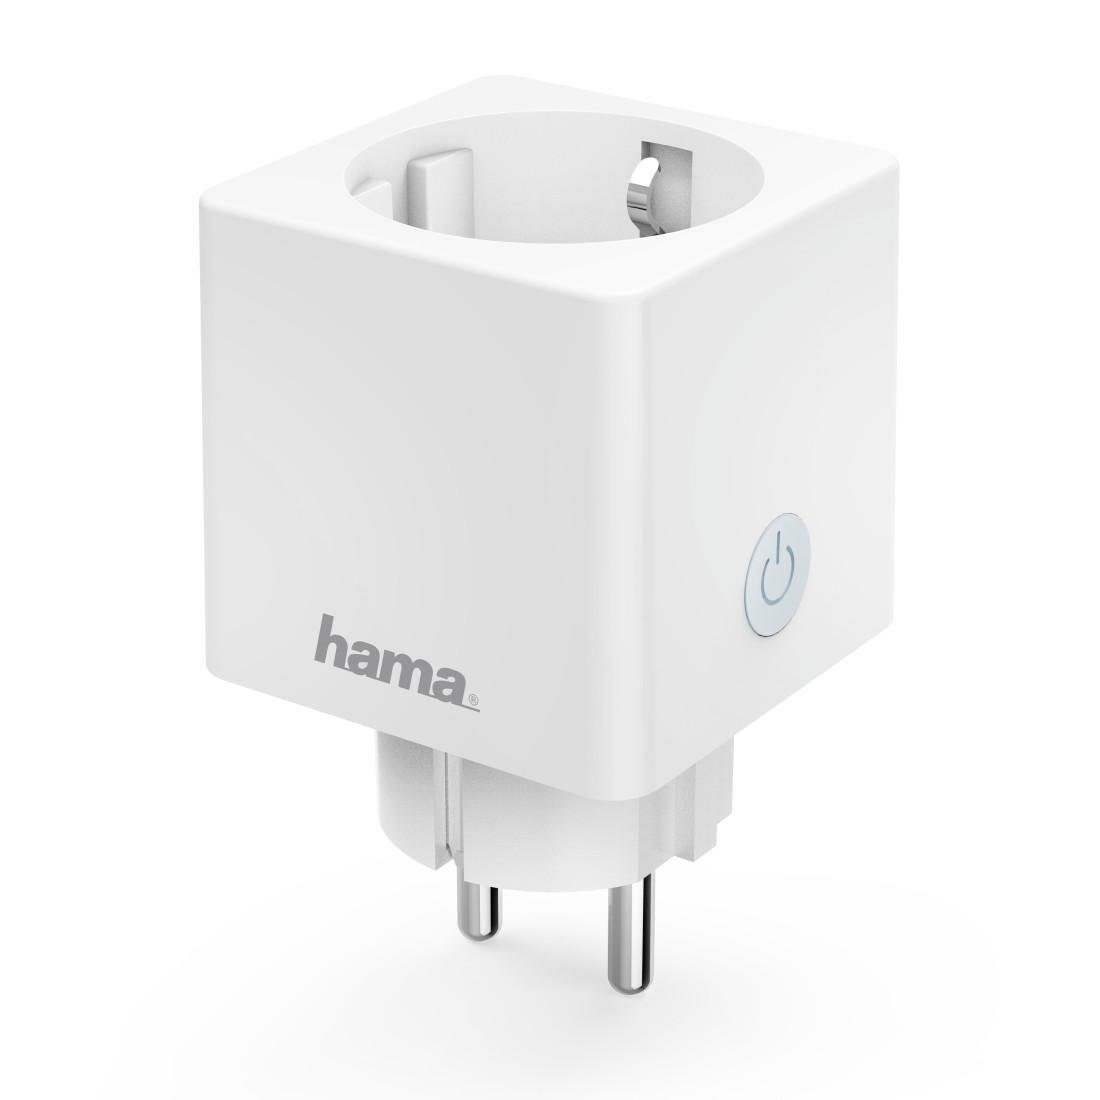 Hama WLAN-Steckdose WLAN Mini Steckdose ohne Hub 3680W für App-u. Sprachsteuerung, max. 3680 W